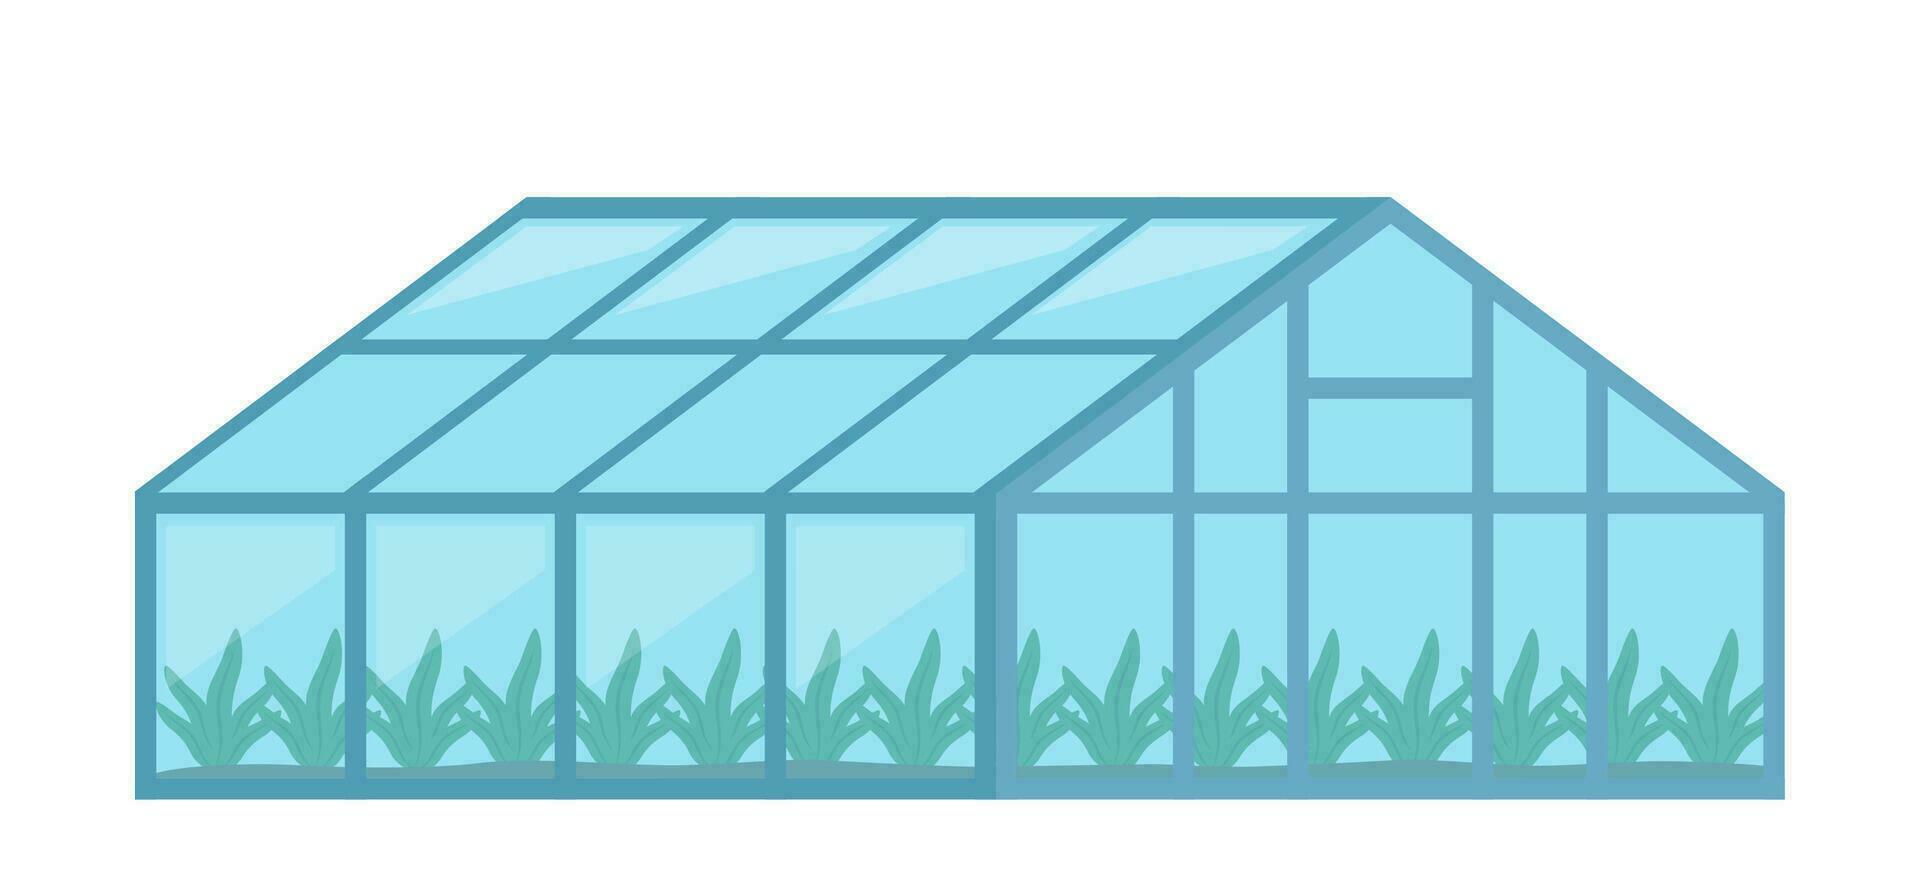 växthus med glas väggar, jordbruks byggnad. odling av jordbruks gröda. vektor illustration.